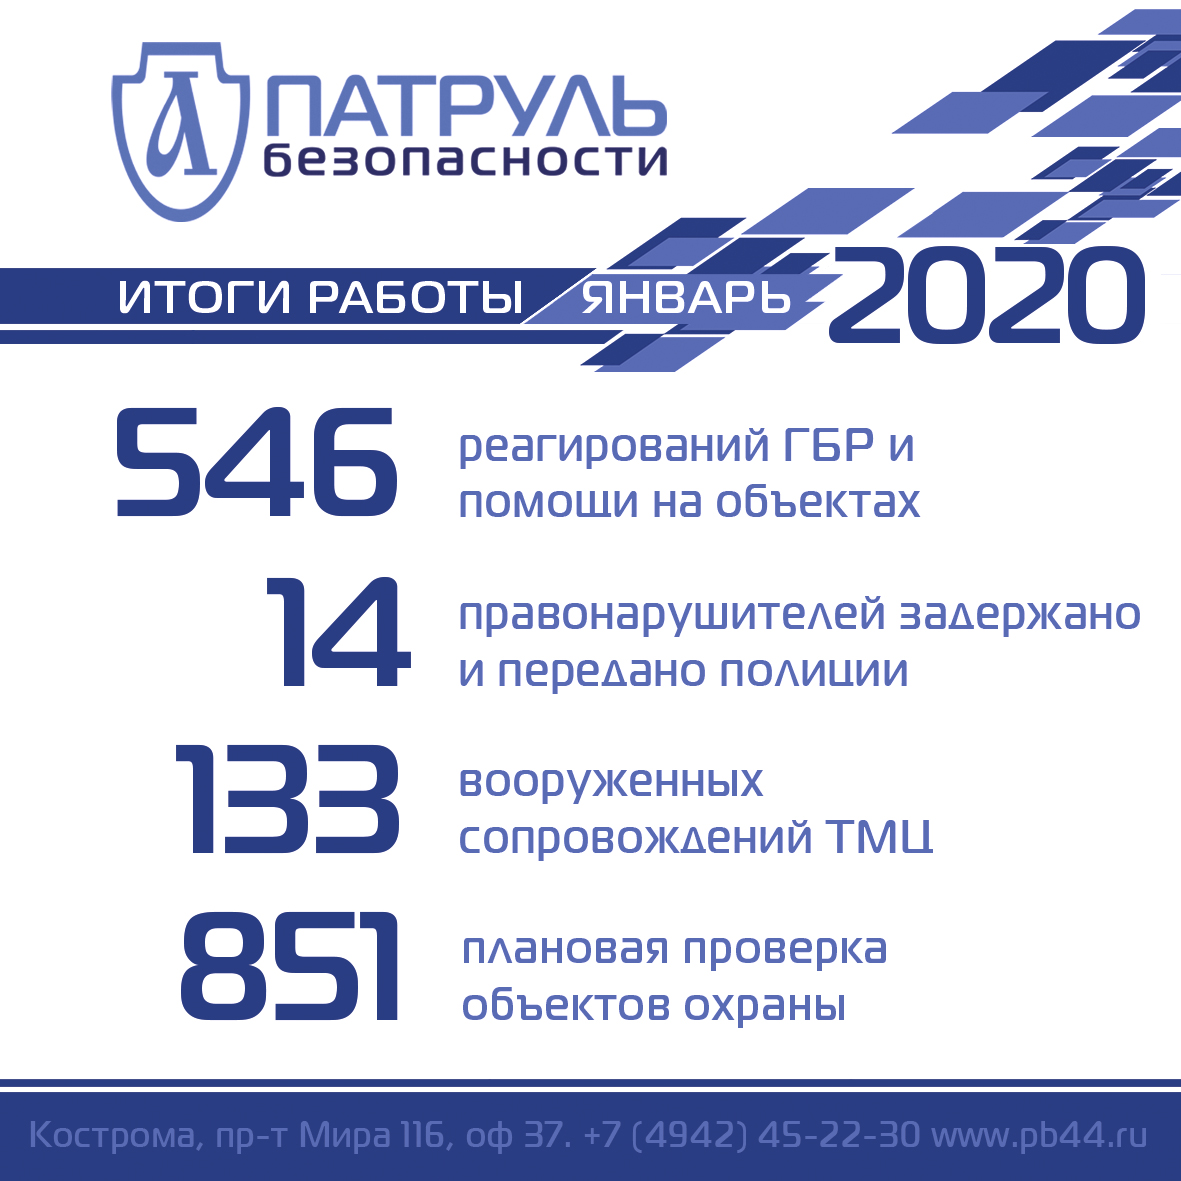 Итоги работы компании "Патруль Безопасности" в январе 2020 года в сфере обеспечения безопасности в Костроме и Костромской области